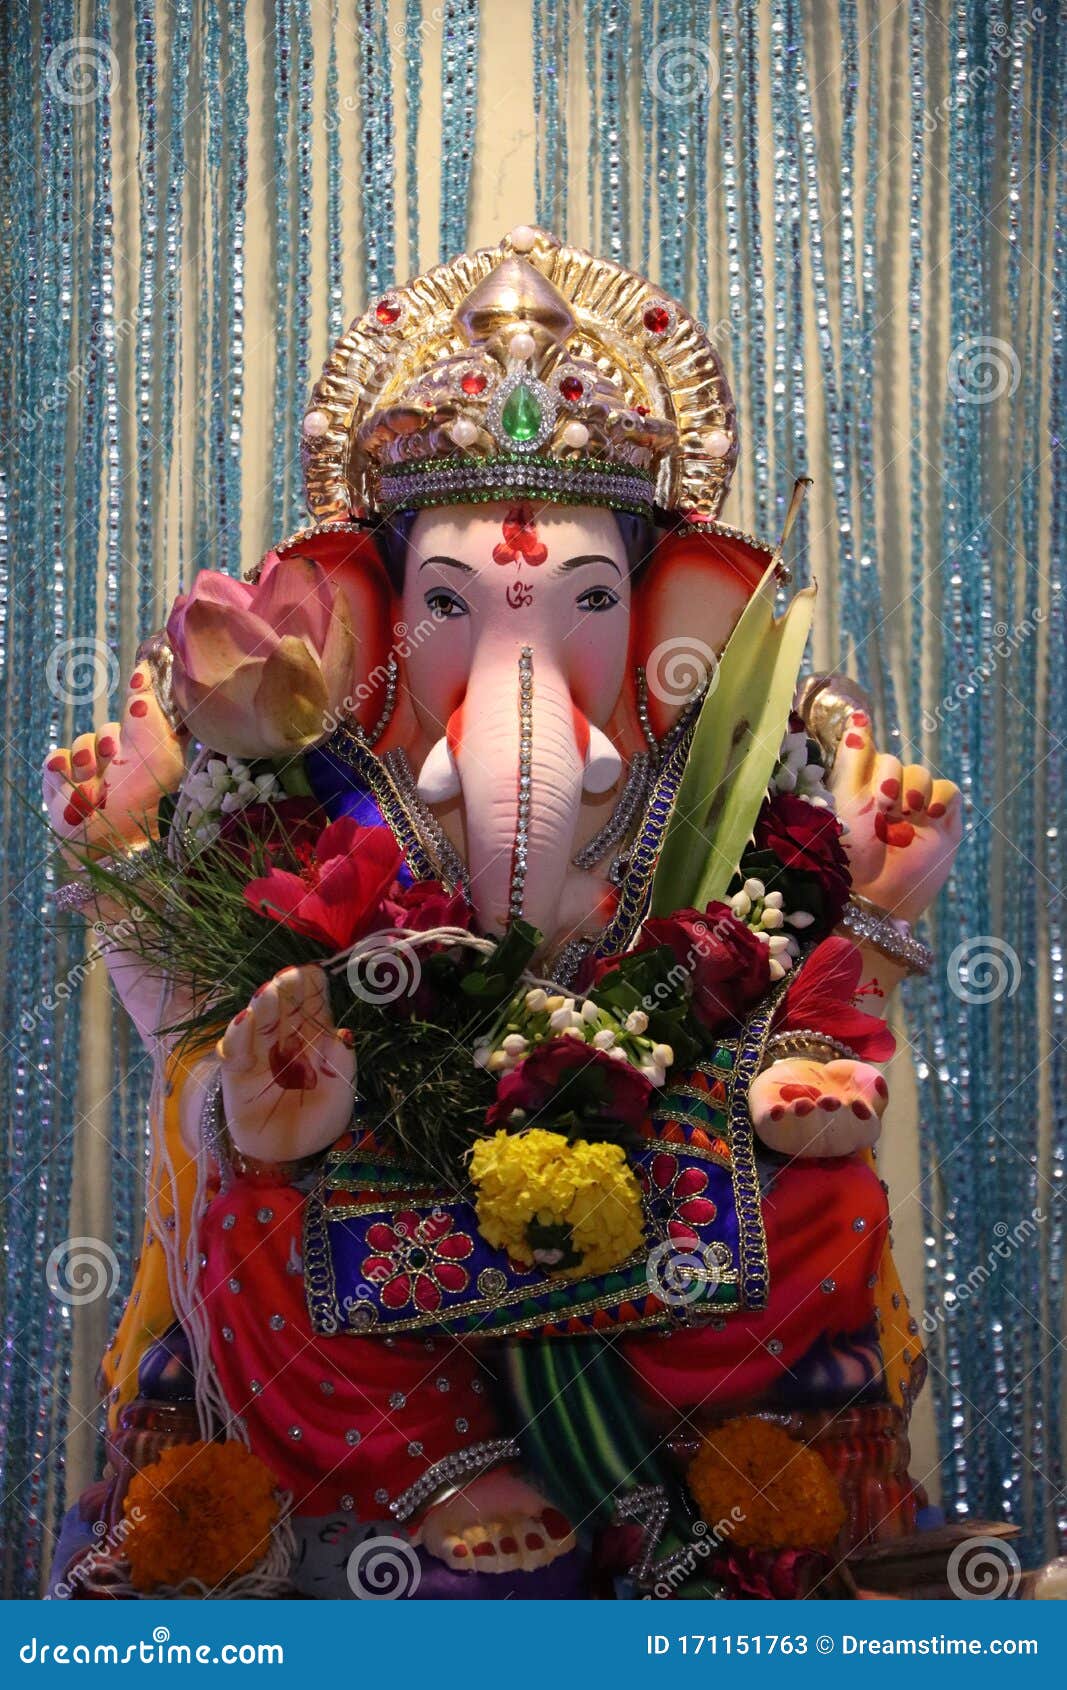 Picture of Lord Ganesha of Hindu Mythology Stock Image - Image of ...